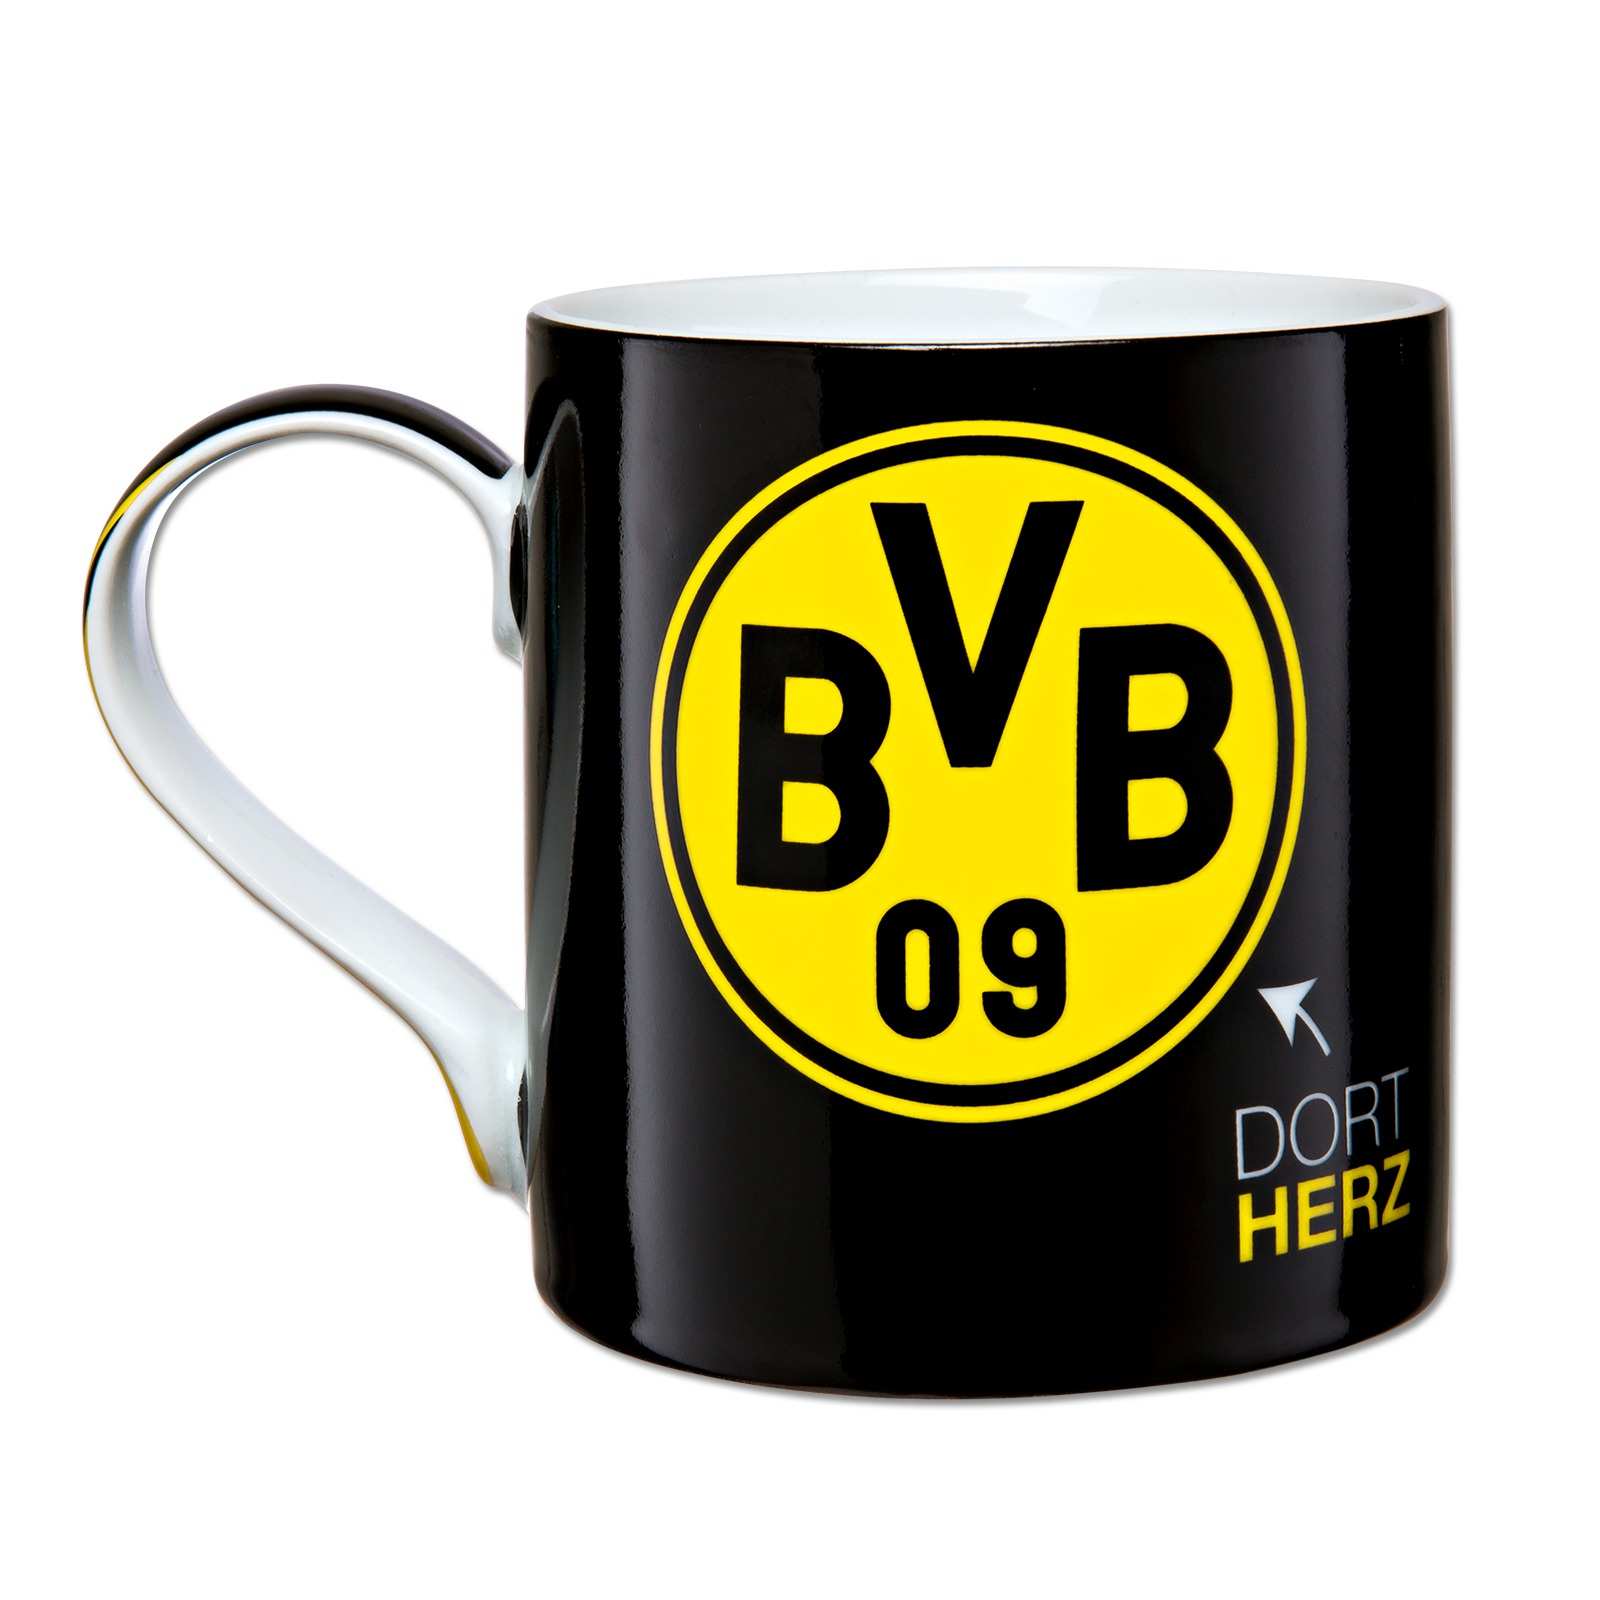 BVB Weihnachtstasse Tasse Becher Borussia Dortmund 